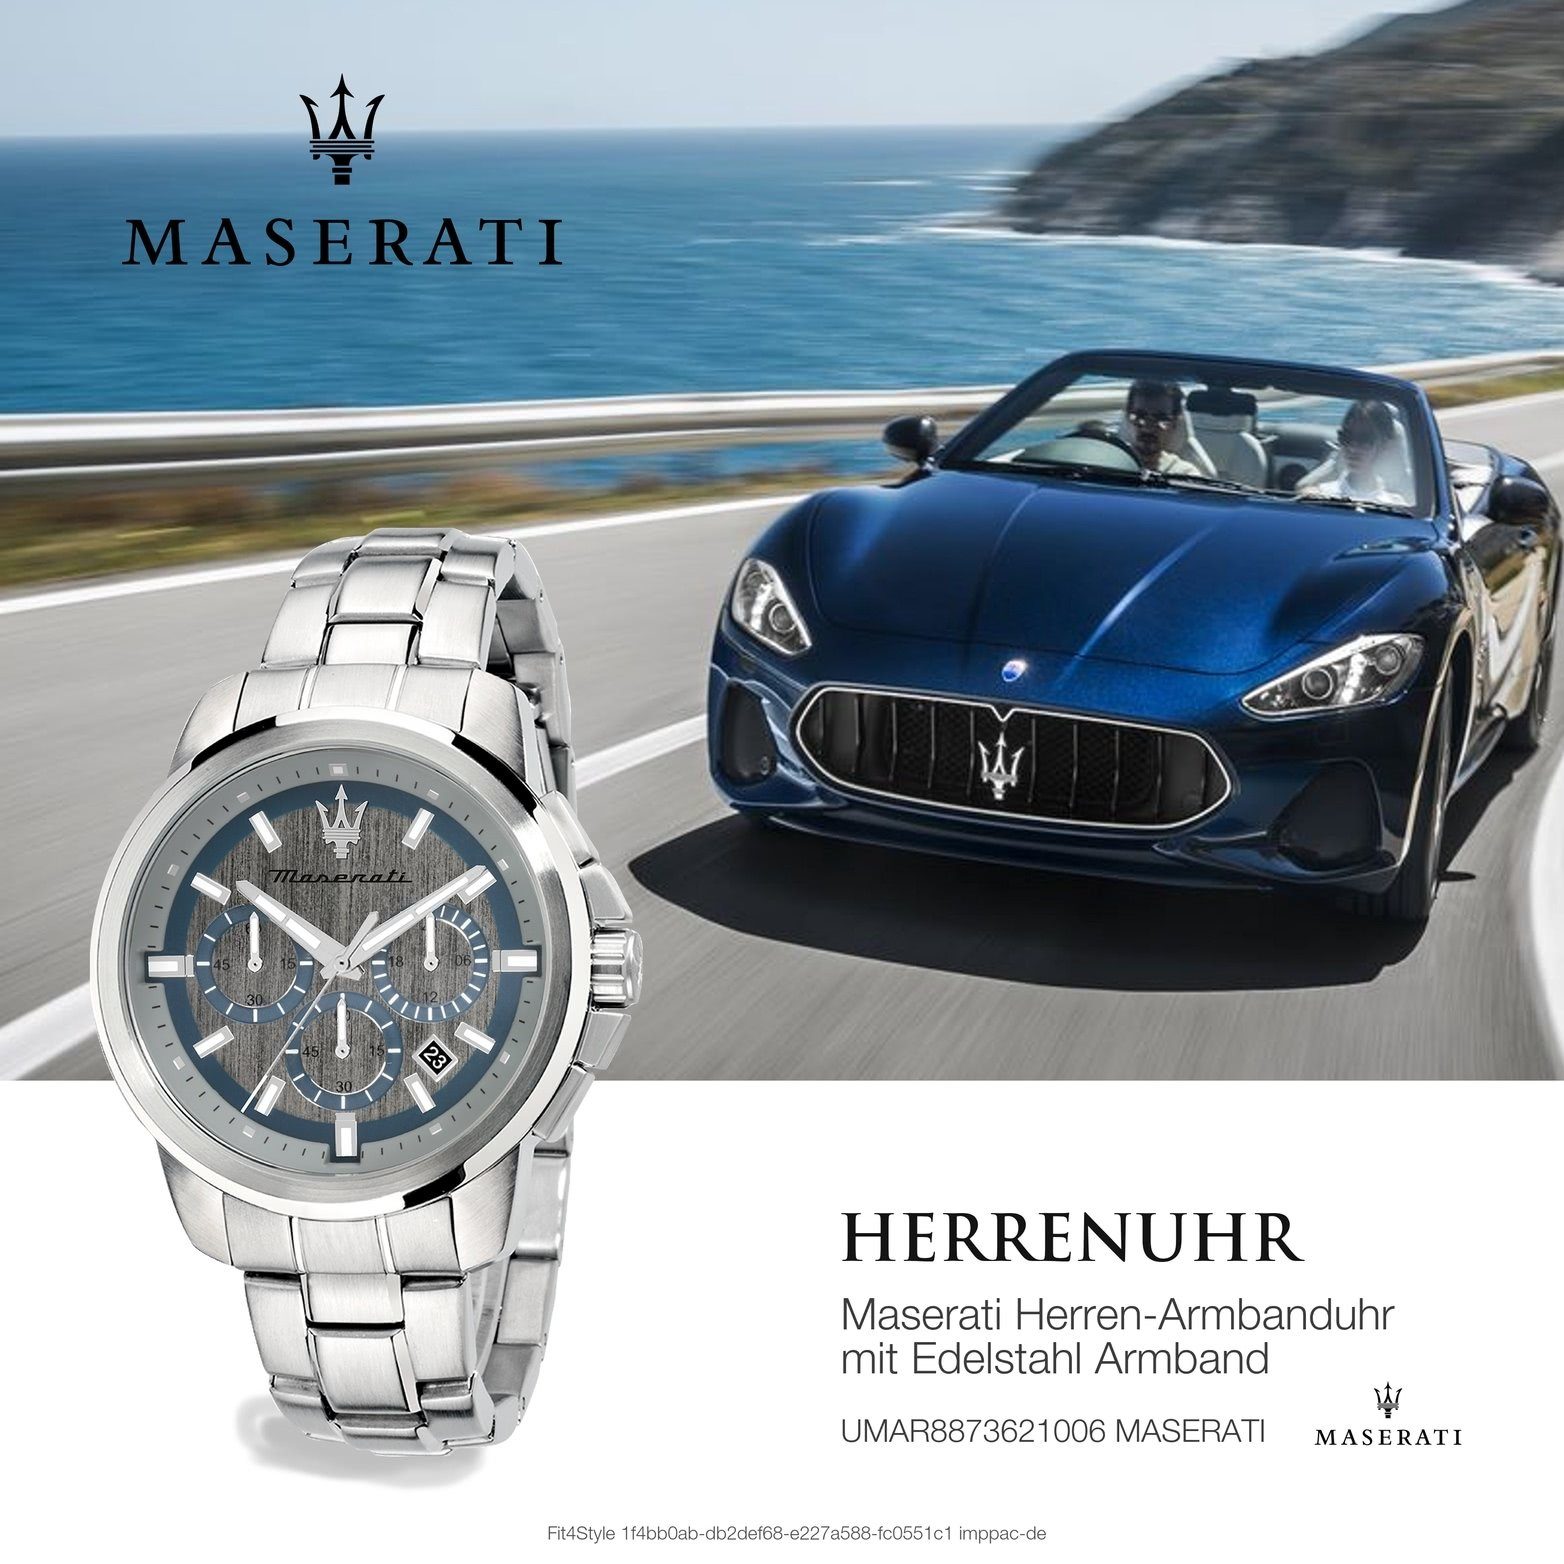 MASERATI Chronograph Maserati Armband-Uhr, Herrenuhr 52x44mm) groß Gehäuse, silber rundes (ca. Edelstahl Edelstahlarmband